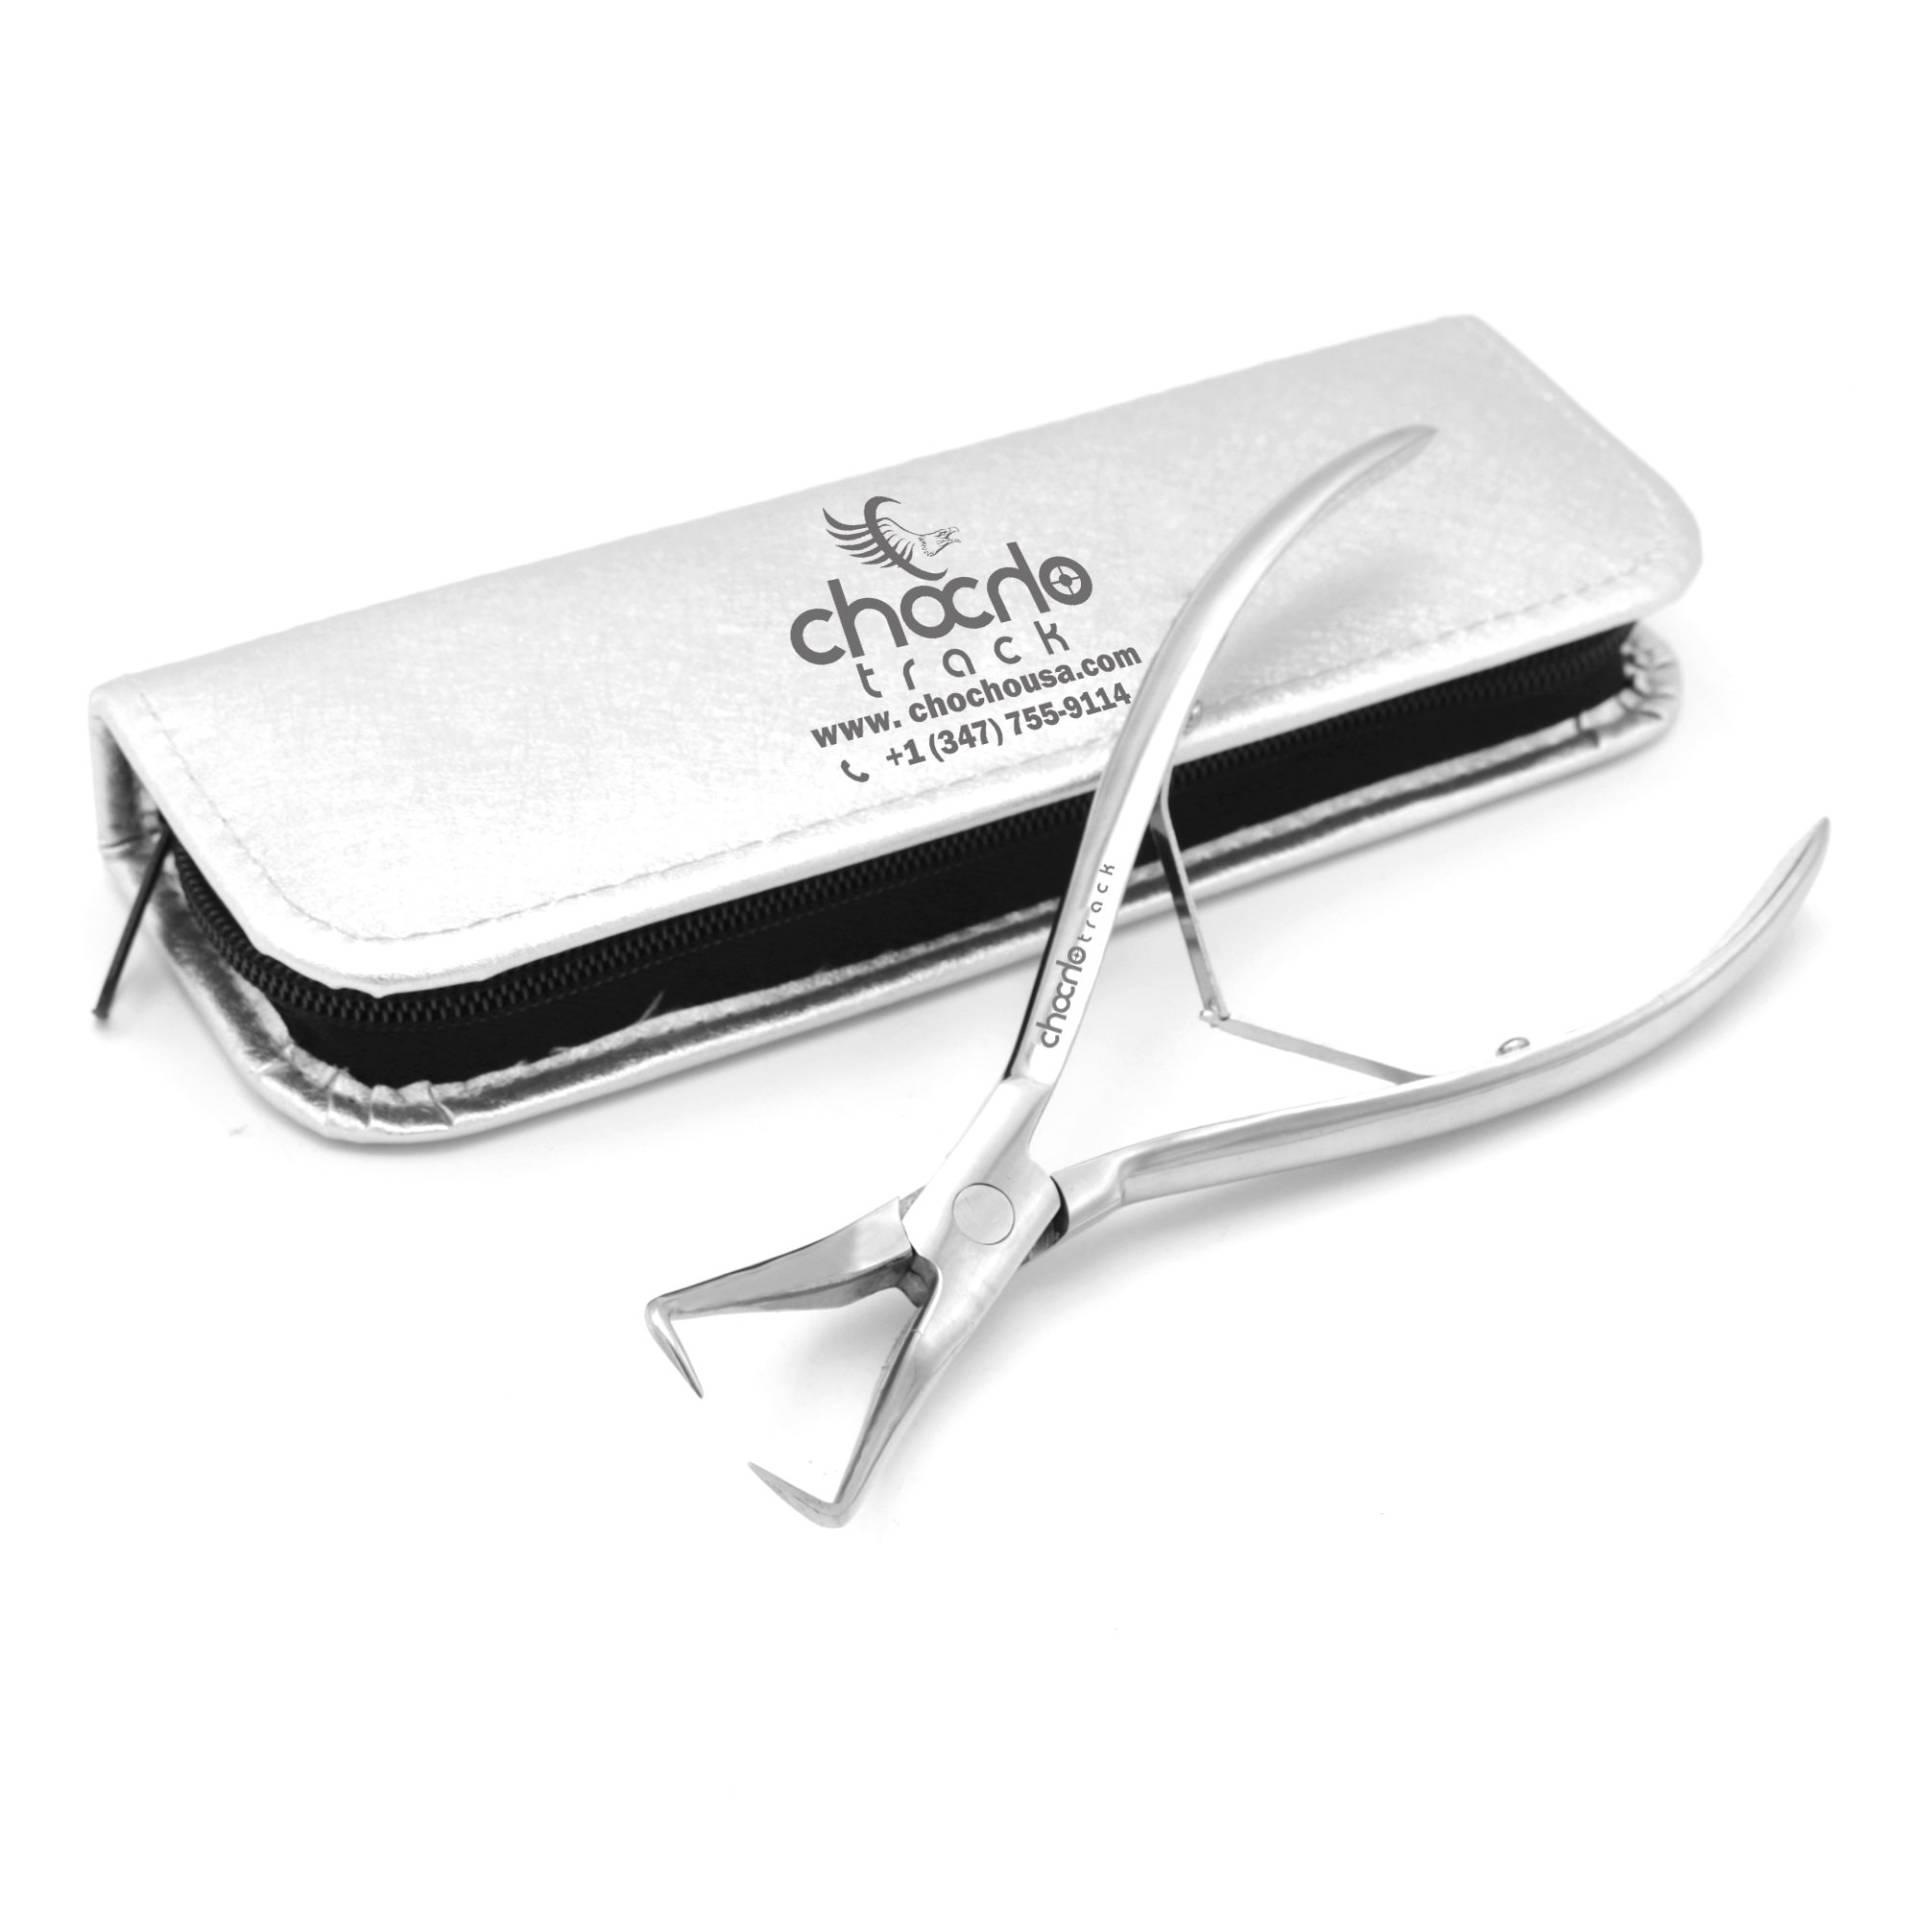 Chocho Pro Haarausdehnung Perlen Öffner Plier Micro Ringe Tool Kit Perlenzange 7" Lang von ChochoTrack